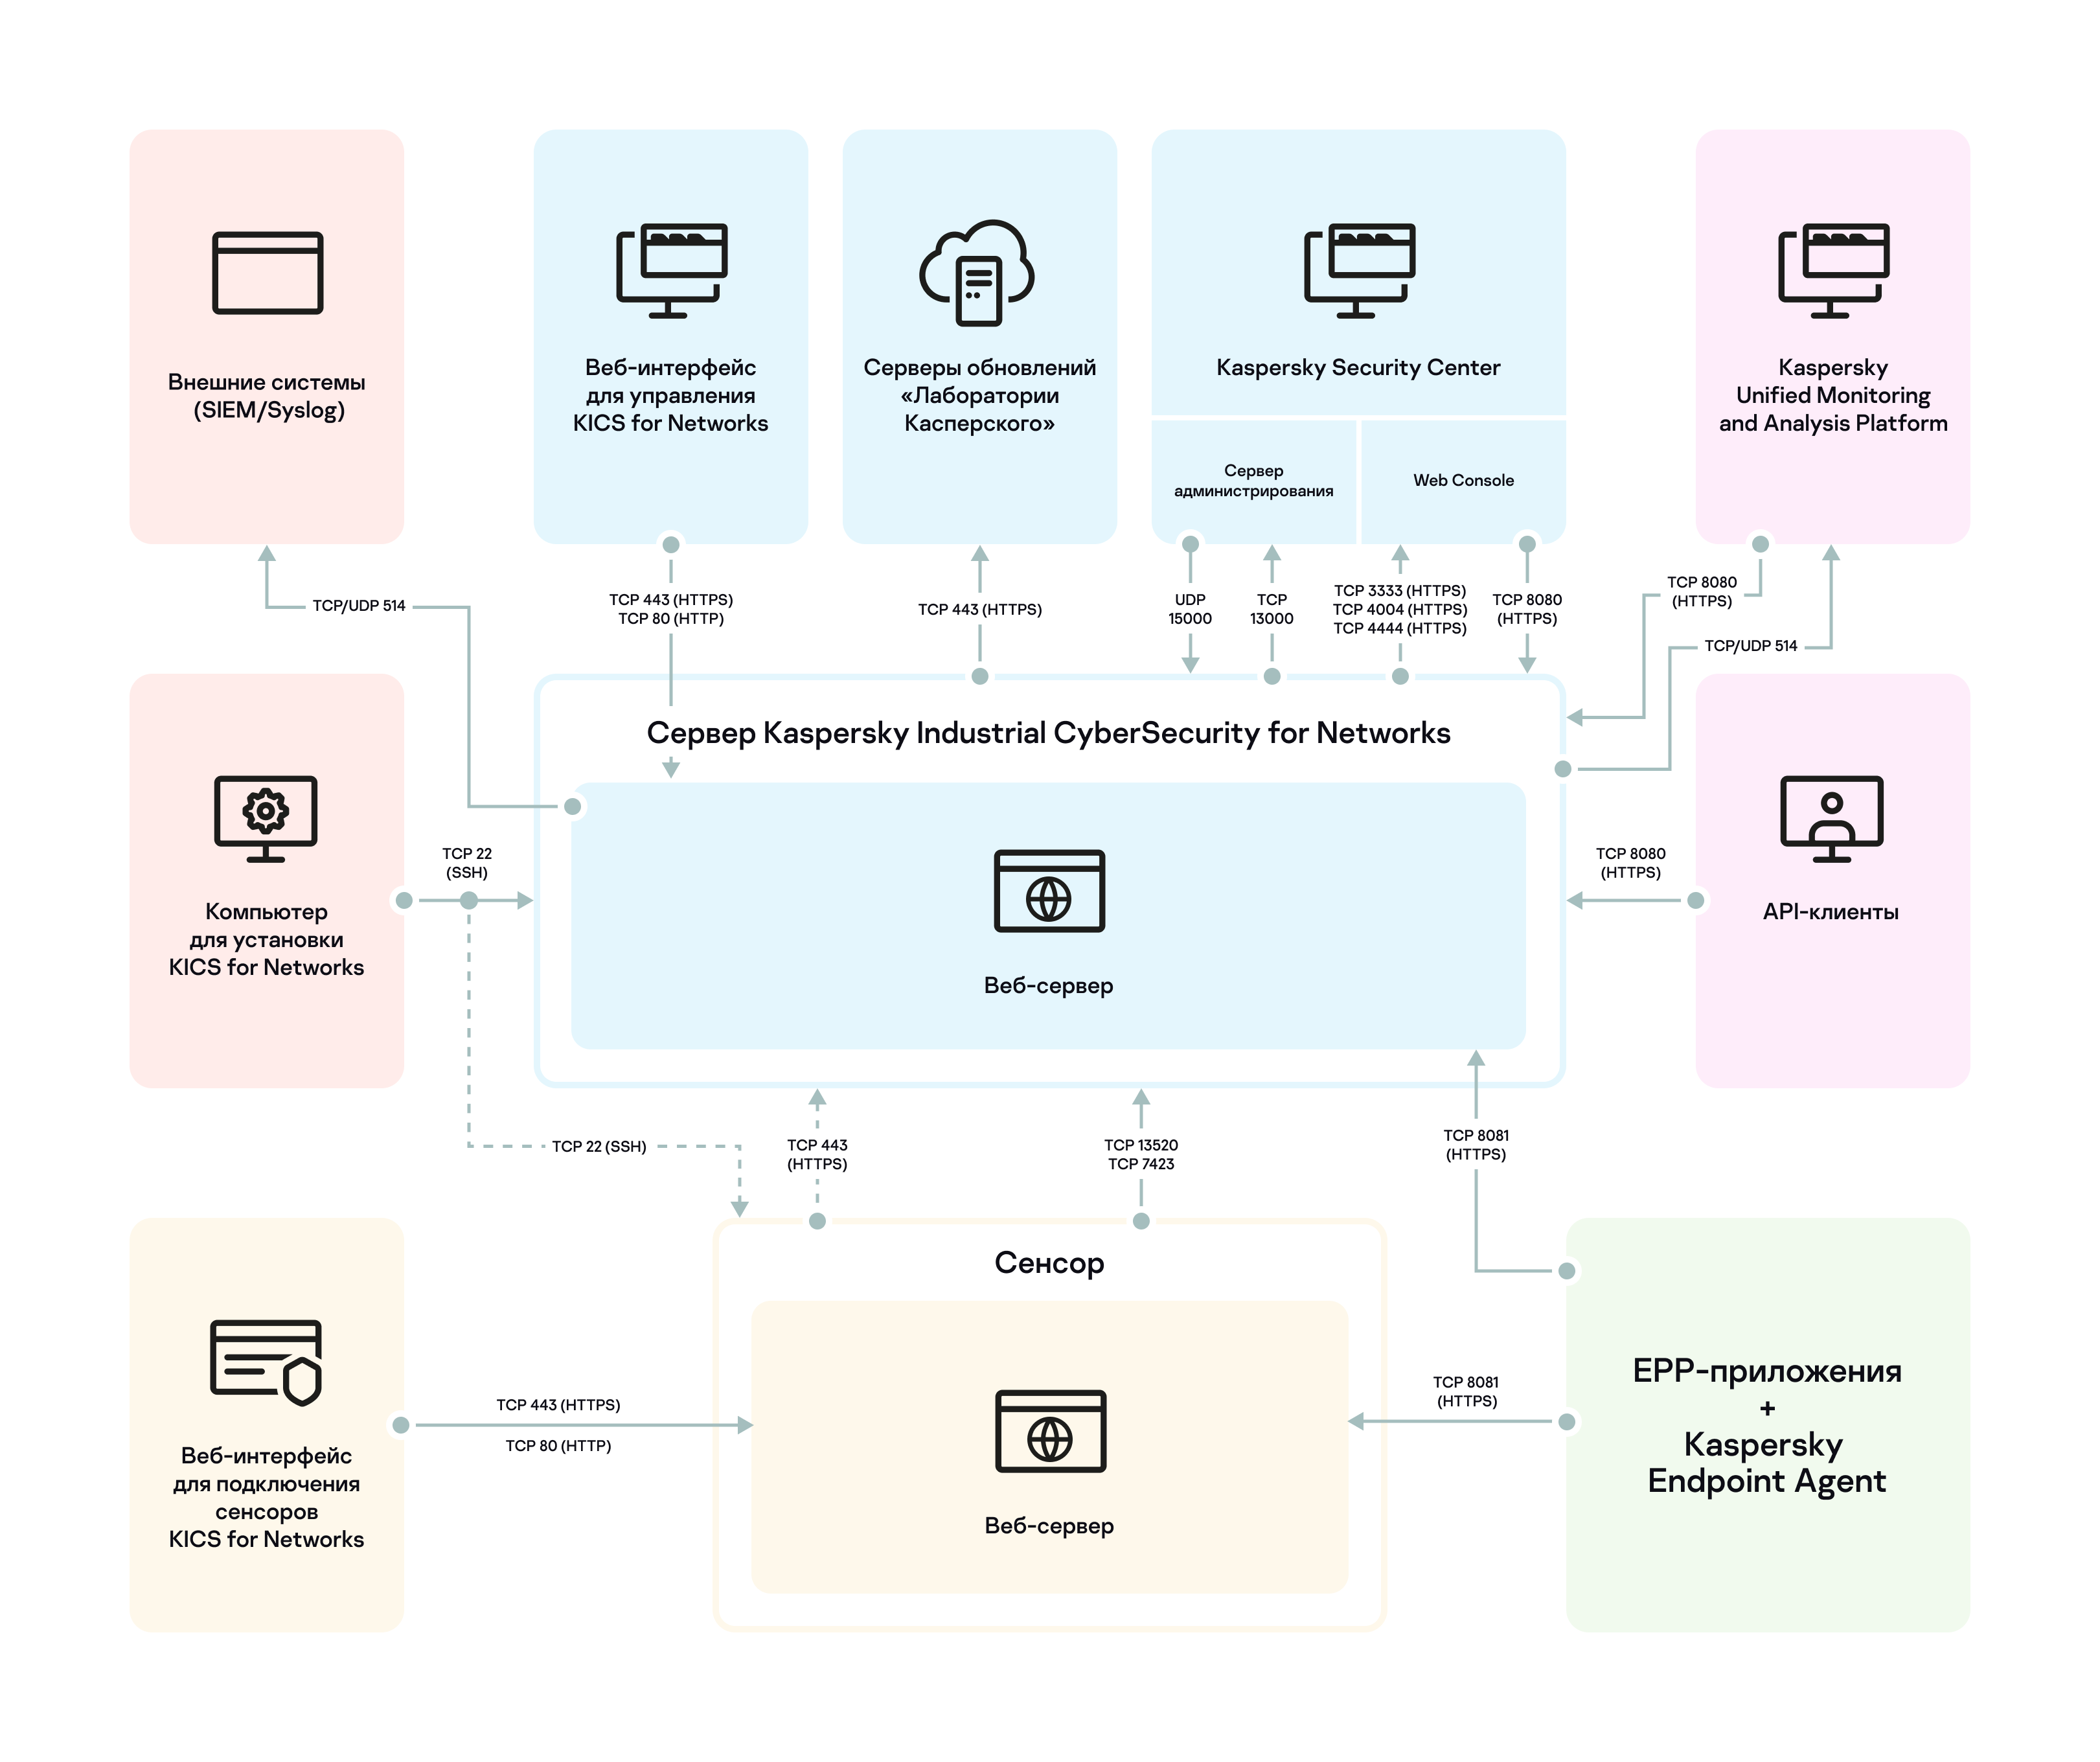 Схема, иллюстрирующая использование портов и протоколов для подключений компонентов программы между собой, а также для взаимодействий с другими  программами. Все порты и протоколы, указанные на схеме, также перечислены в таблице ниже.